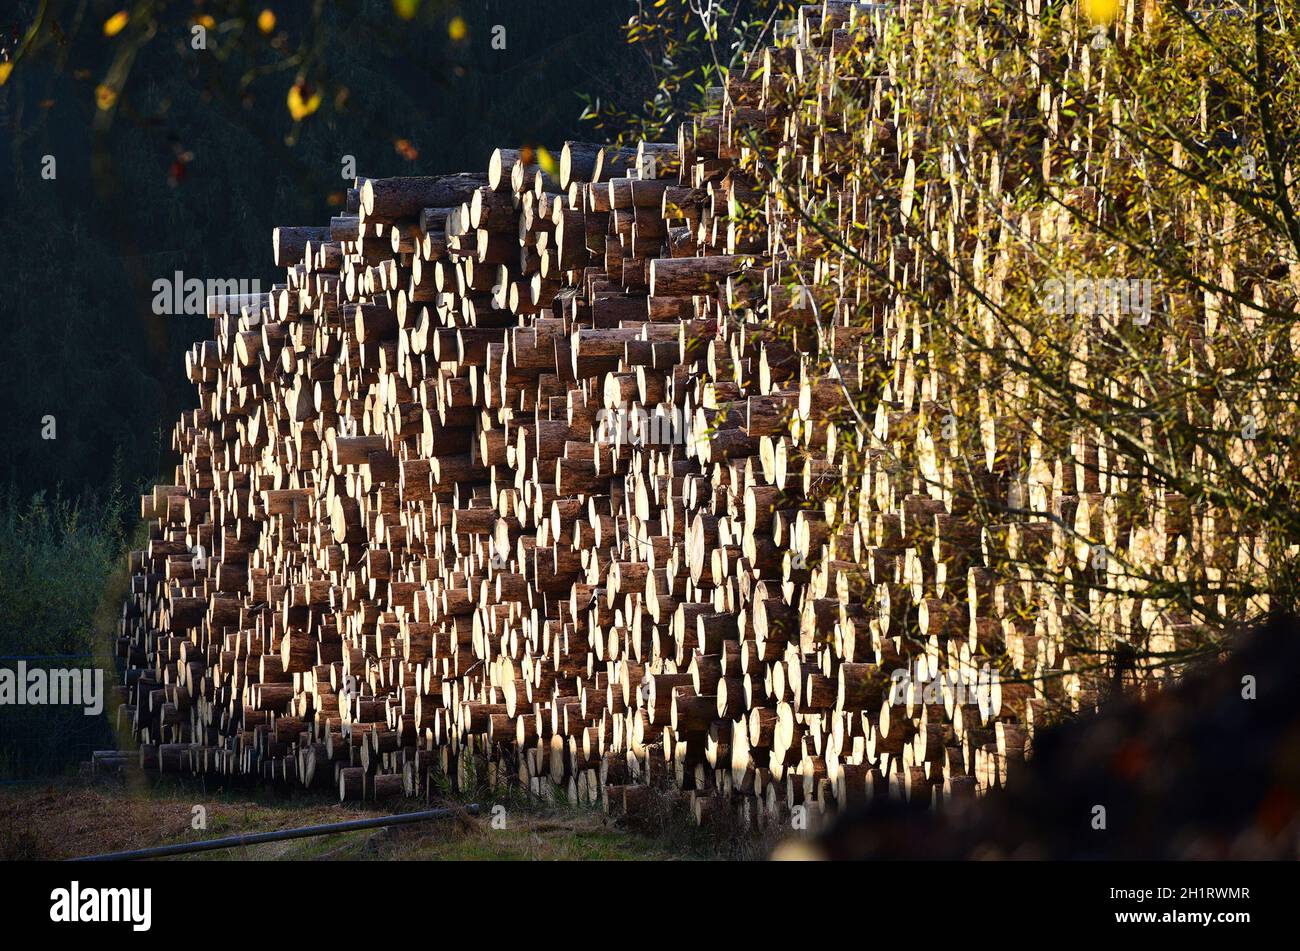 Holzstoß mit großen Baumstämmen in Österreich, Europa - Pile of wood with large tree trunks in Austria, Europe Stock Photo